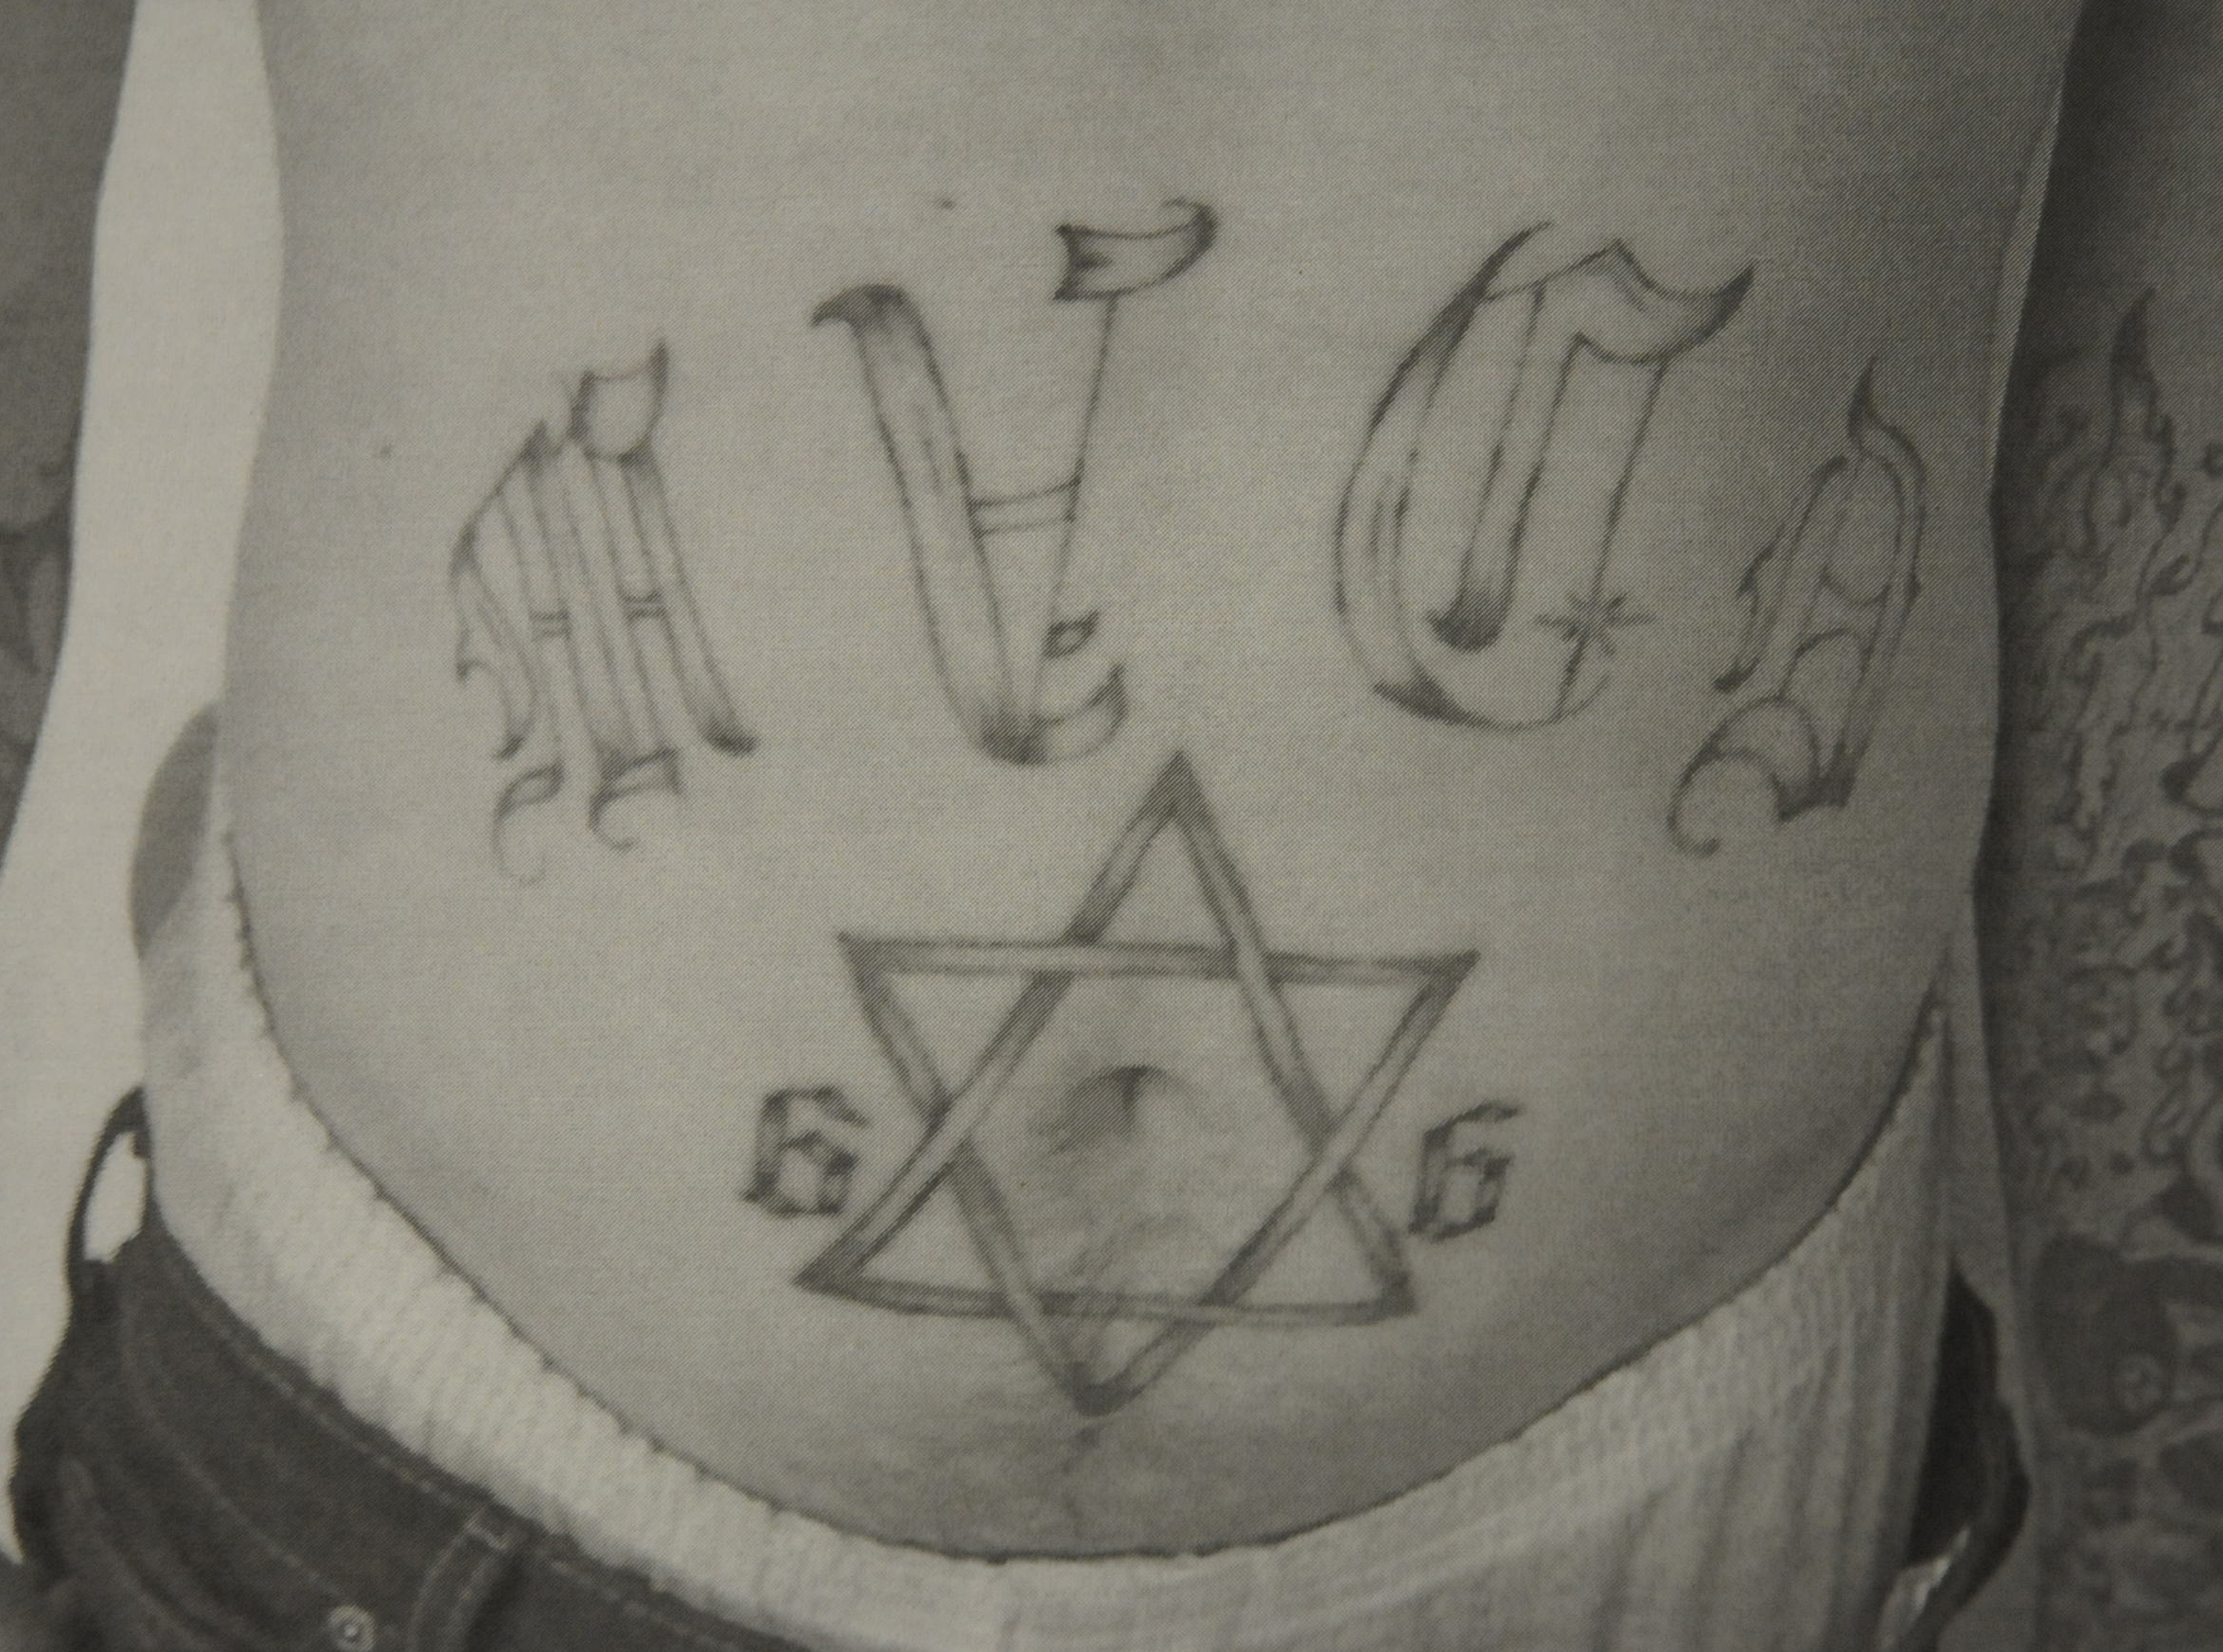 gangster disciples symbols